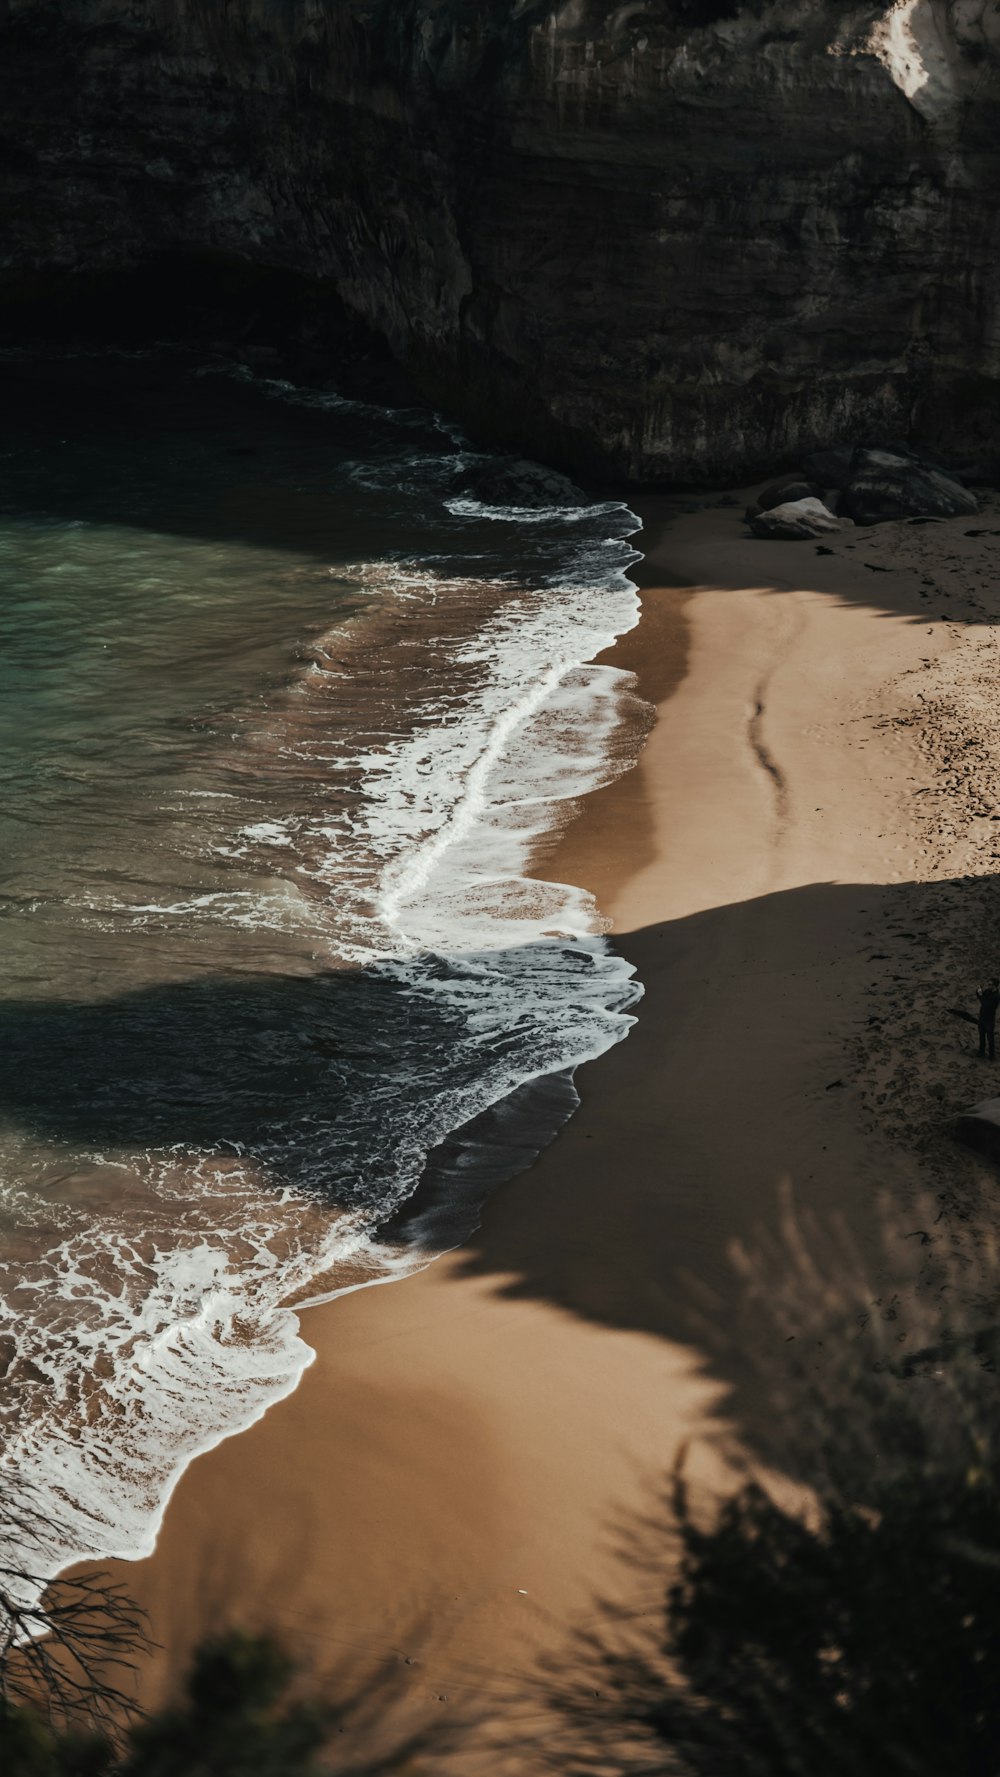 Plage de sable brun avec des vagues d’eau s’écrasant sur le rivage pendant la journée